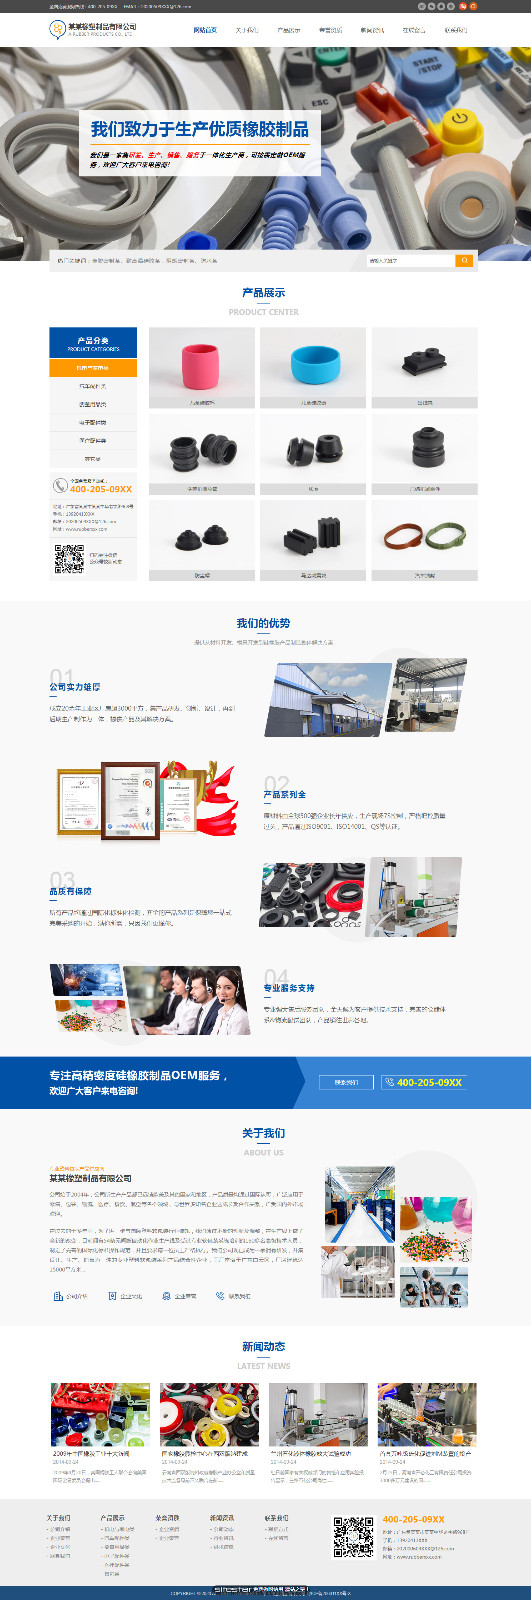 橡胶、塑料制品网站模板-rubber-20509